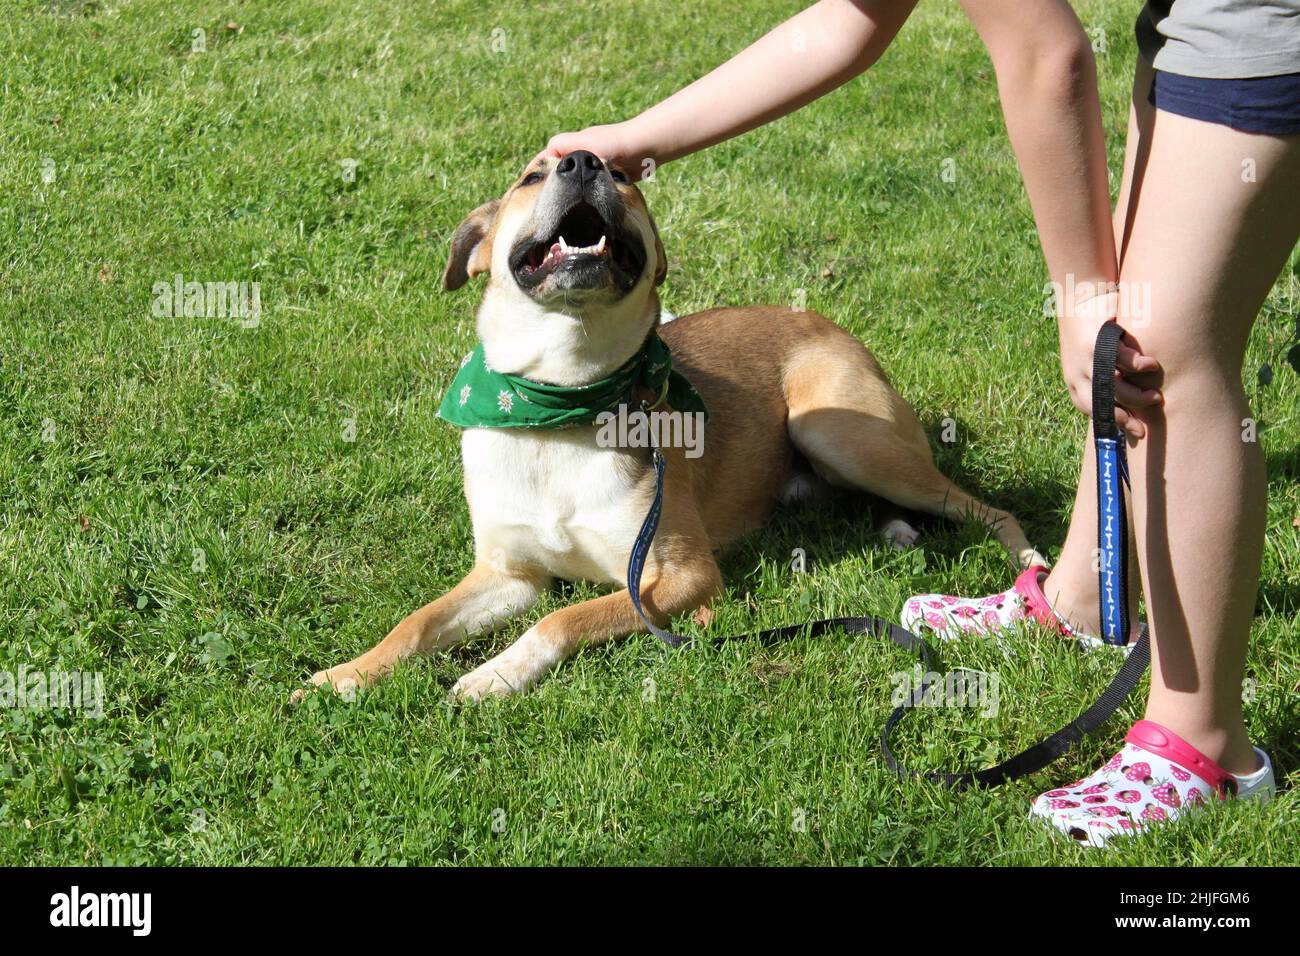 Un mélange de Pitbull est relevé par un enfant. Le chien repose sur l'herbe et est heureux. L'enfant tient la laisse et l'appuie sur la tête. Banque D'Images